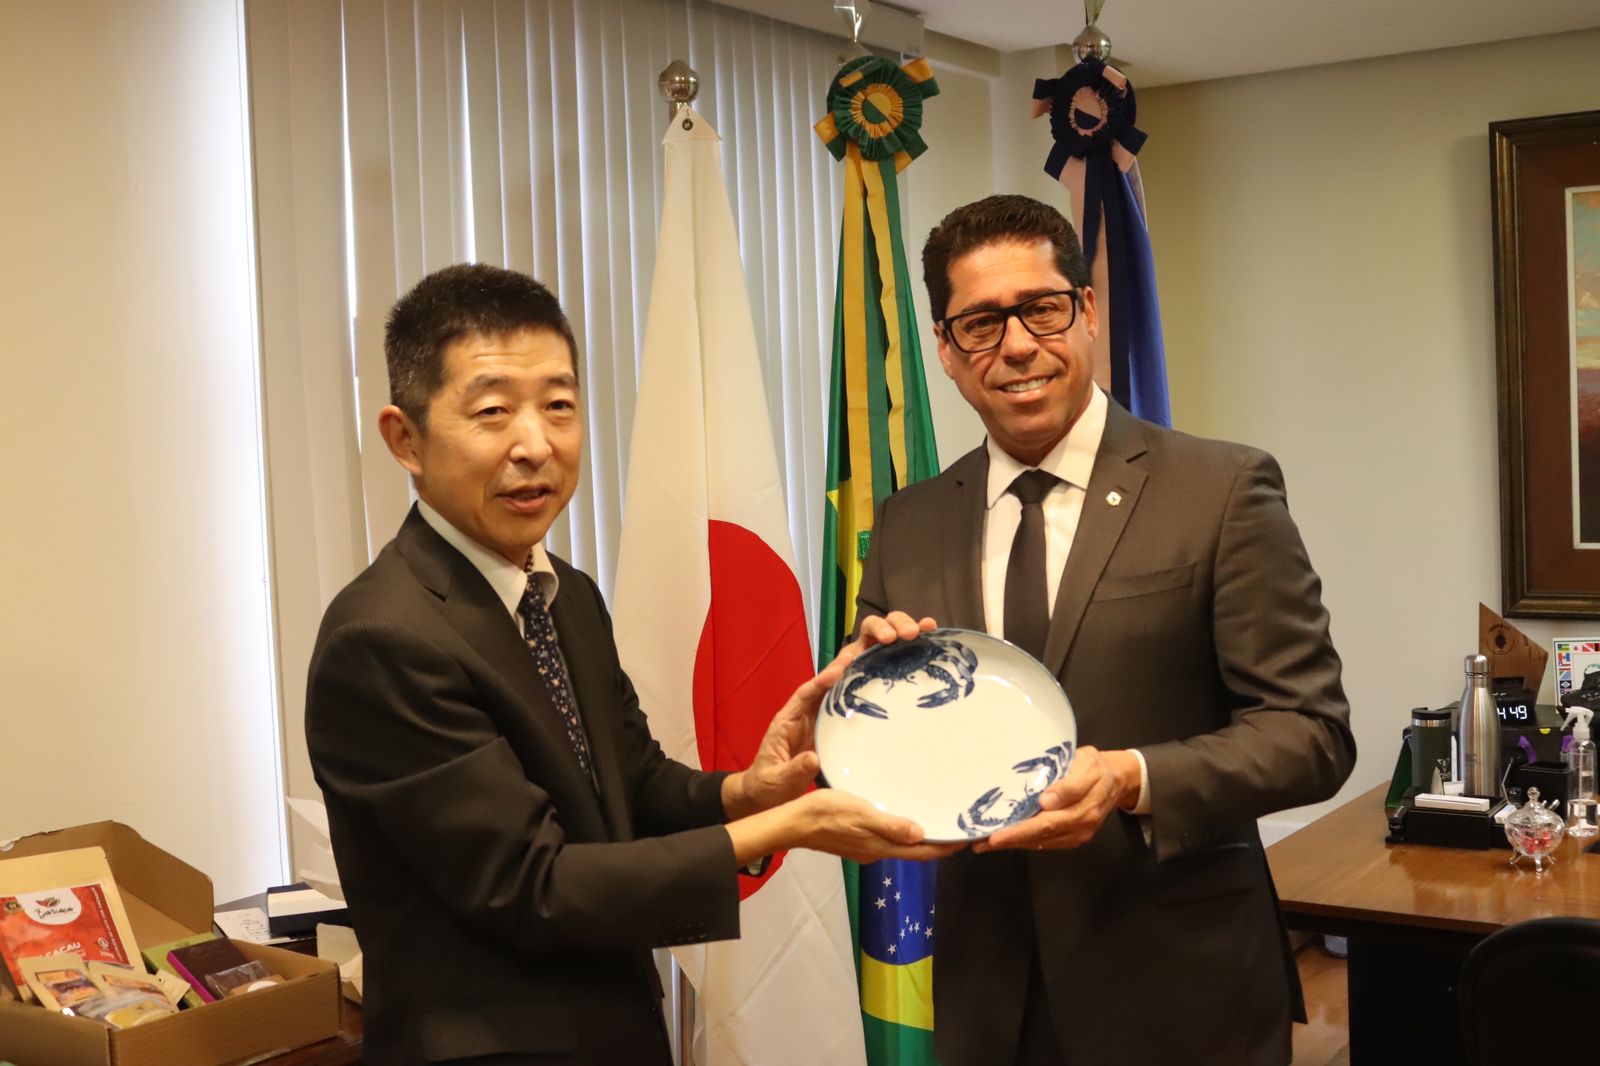 Cônsul Geral do Japão e Cônsul Cultural buscam fortalecer laços diplomáticos em visita à Assembleia Legislativa do ES